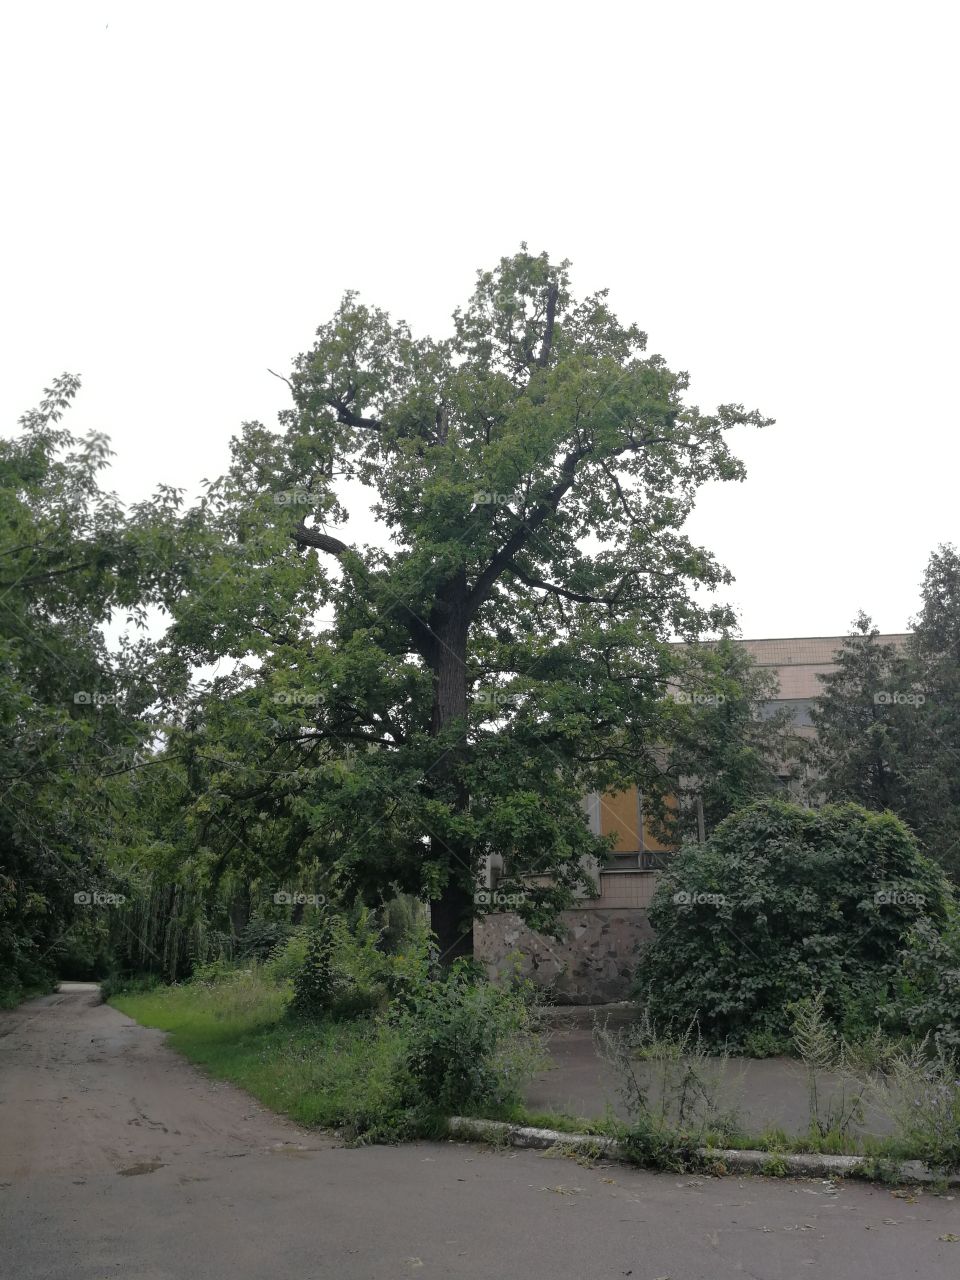 An old oak tree nearby a psychiatry clinic.